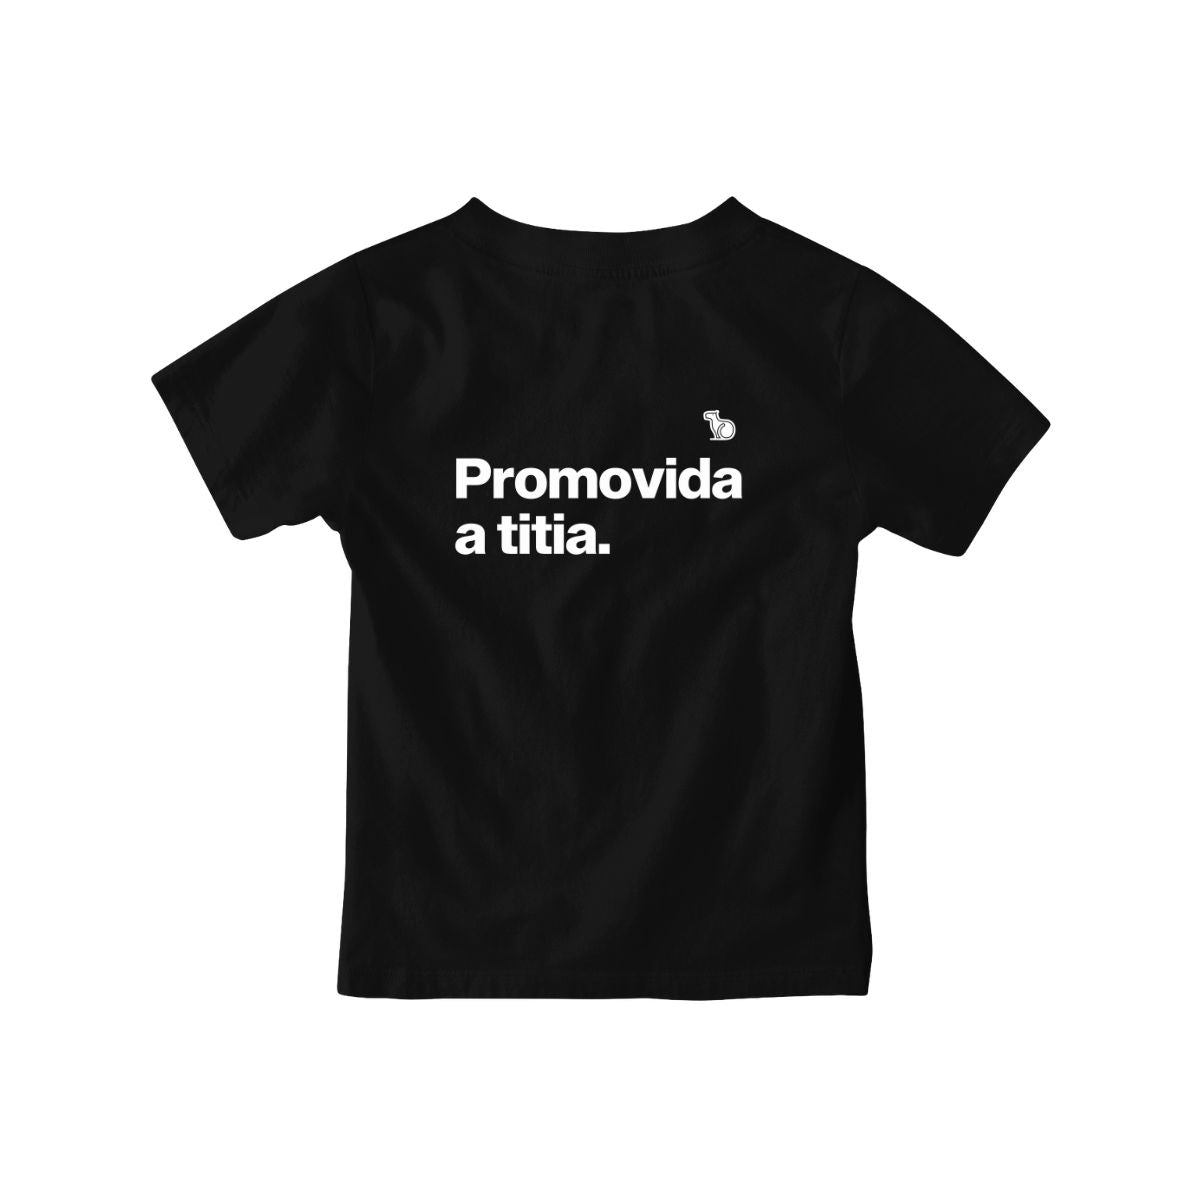 Camiseta infantil preta com a frase "Promovida a titia."